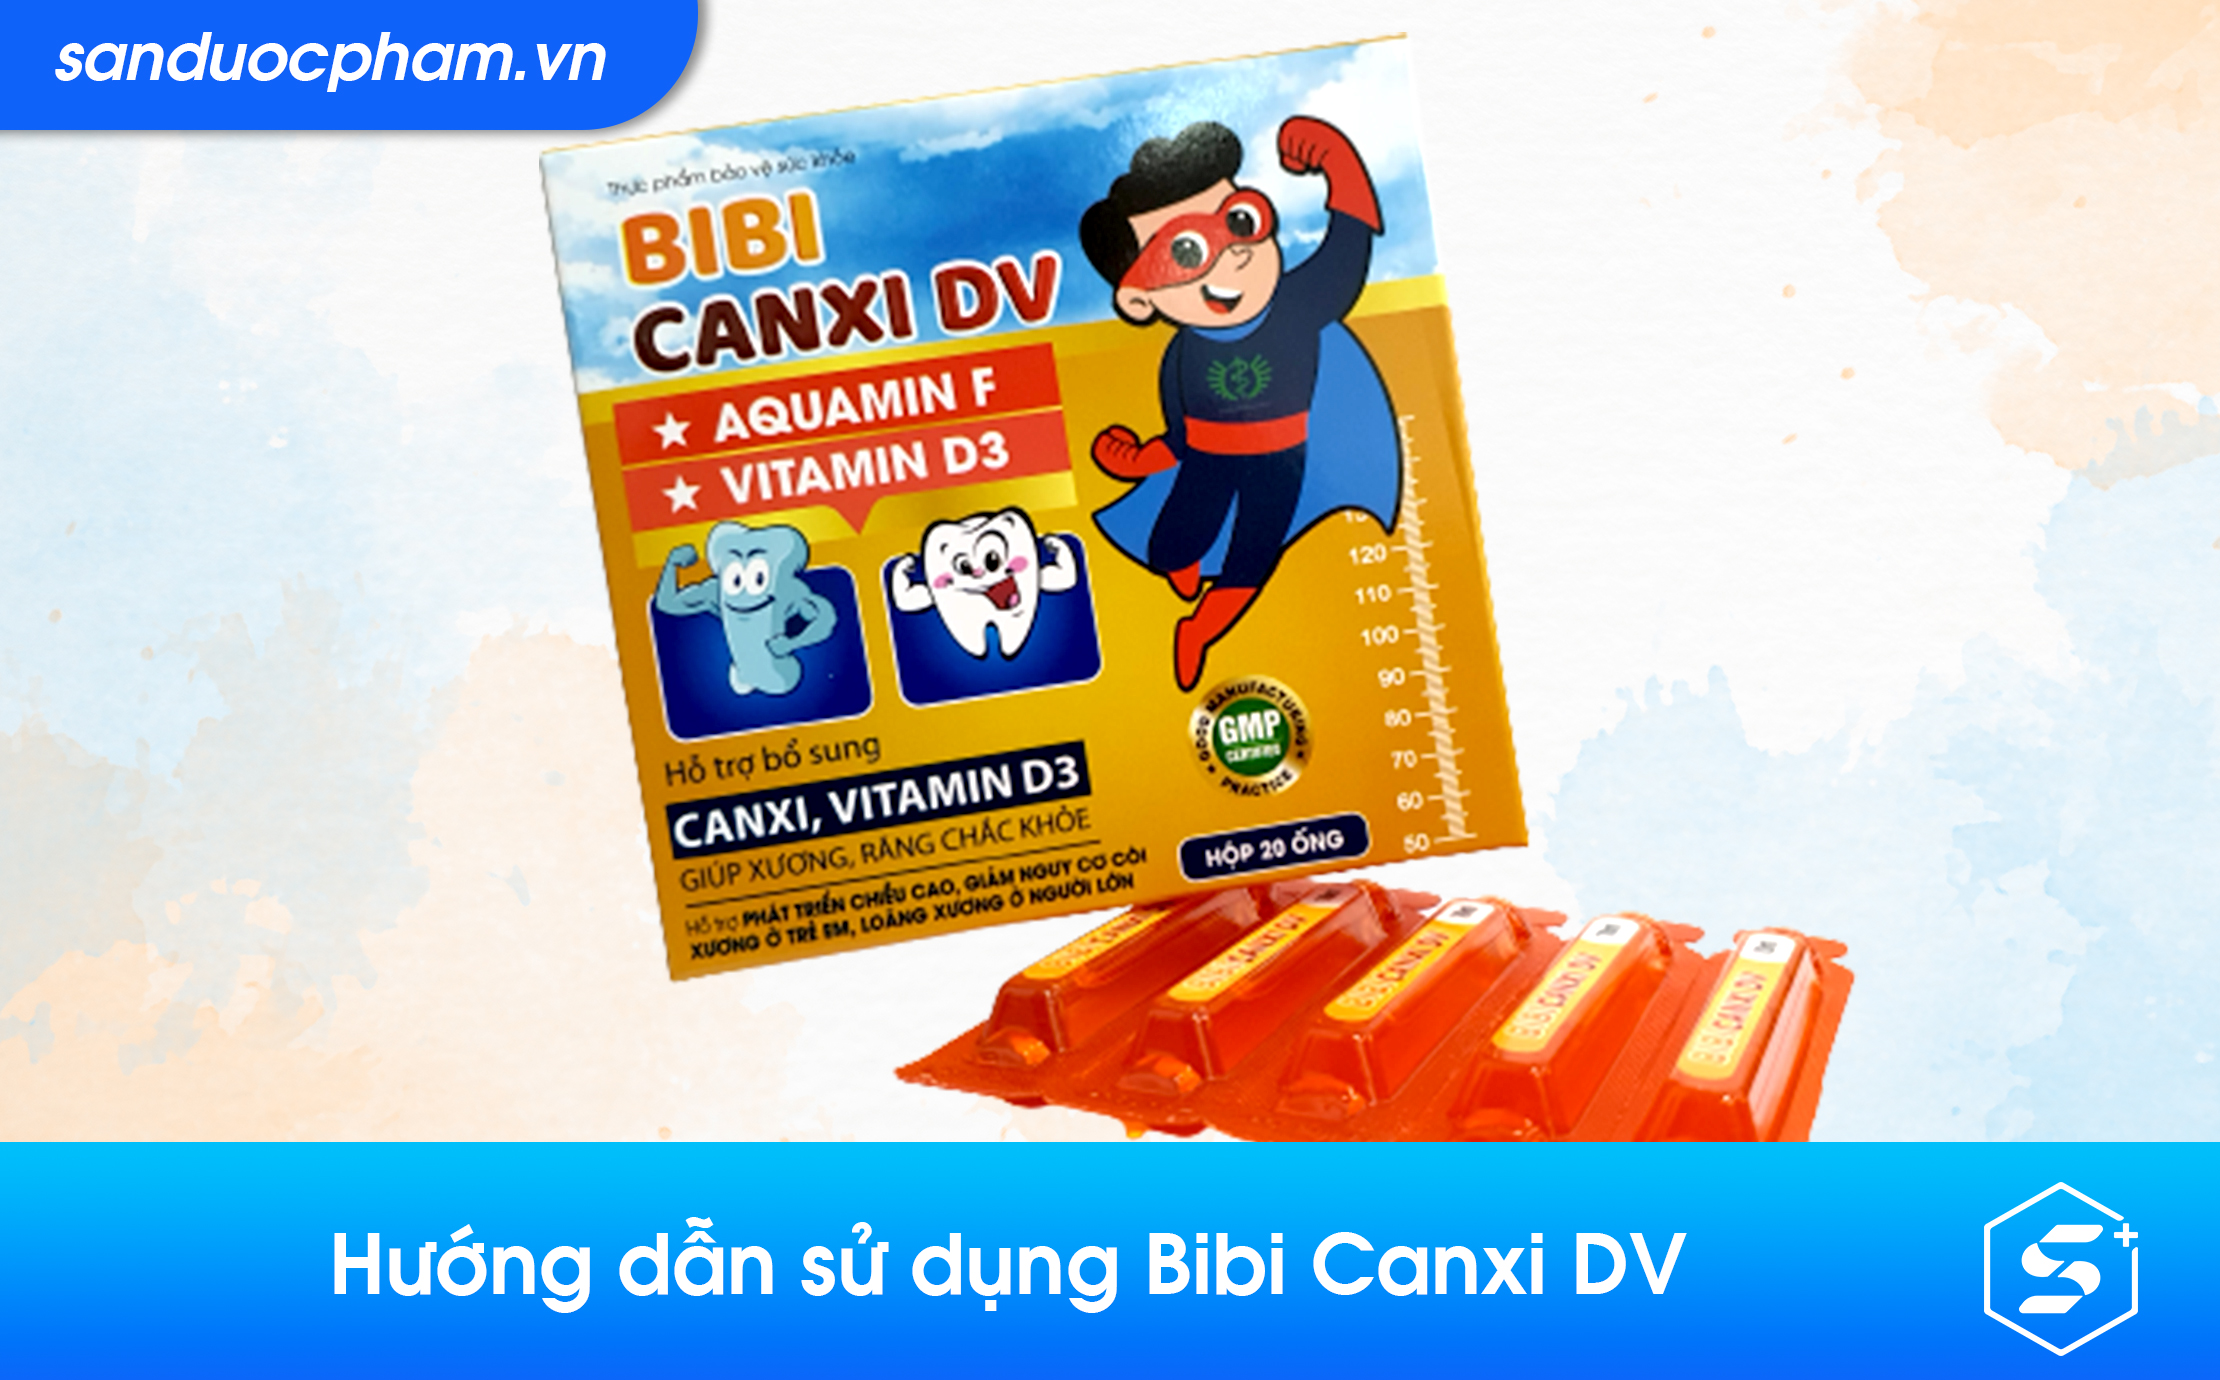 Hướng dẫn sử dụng Bibi Canxi DV